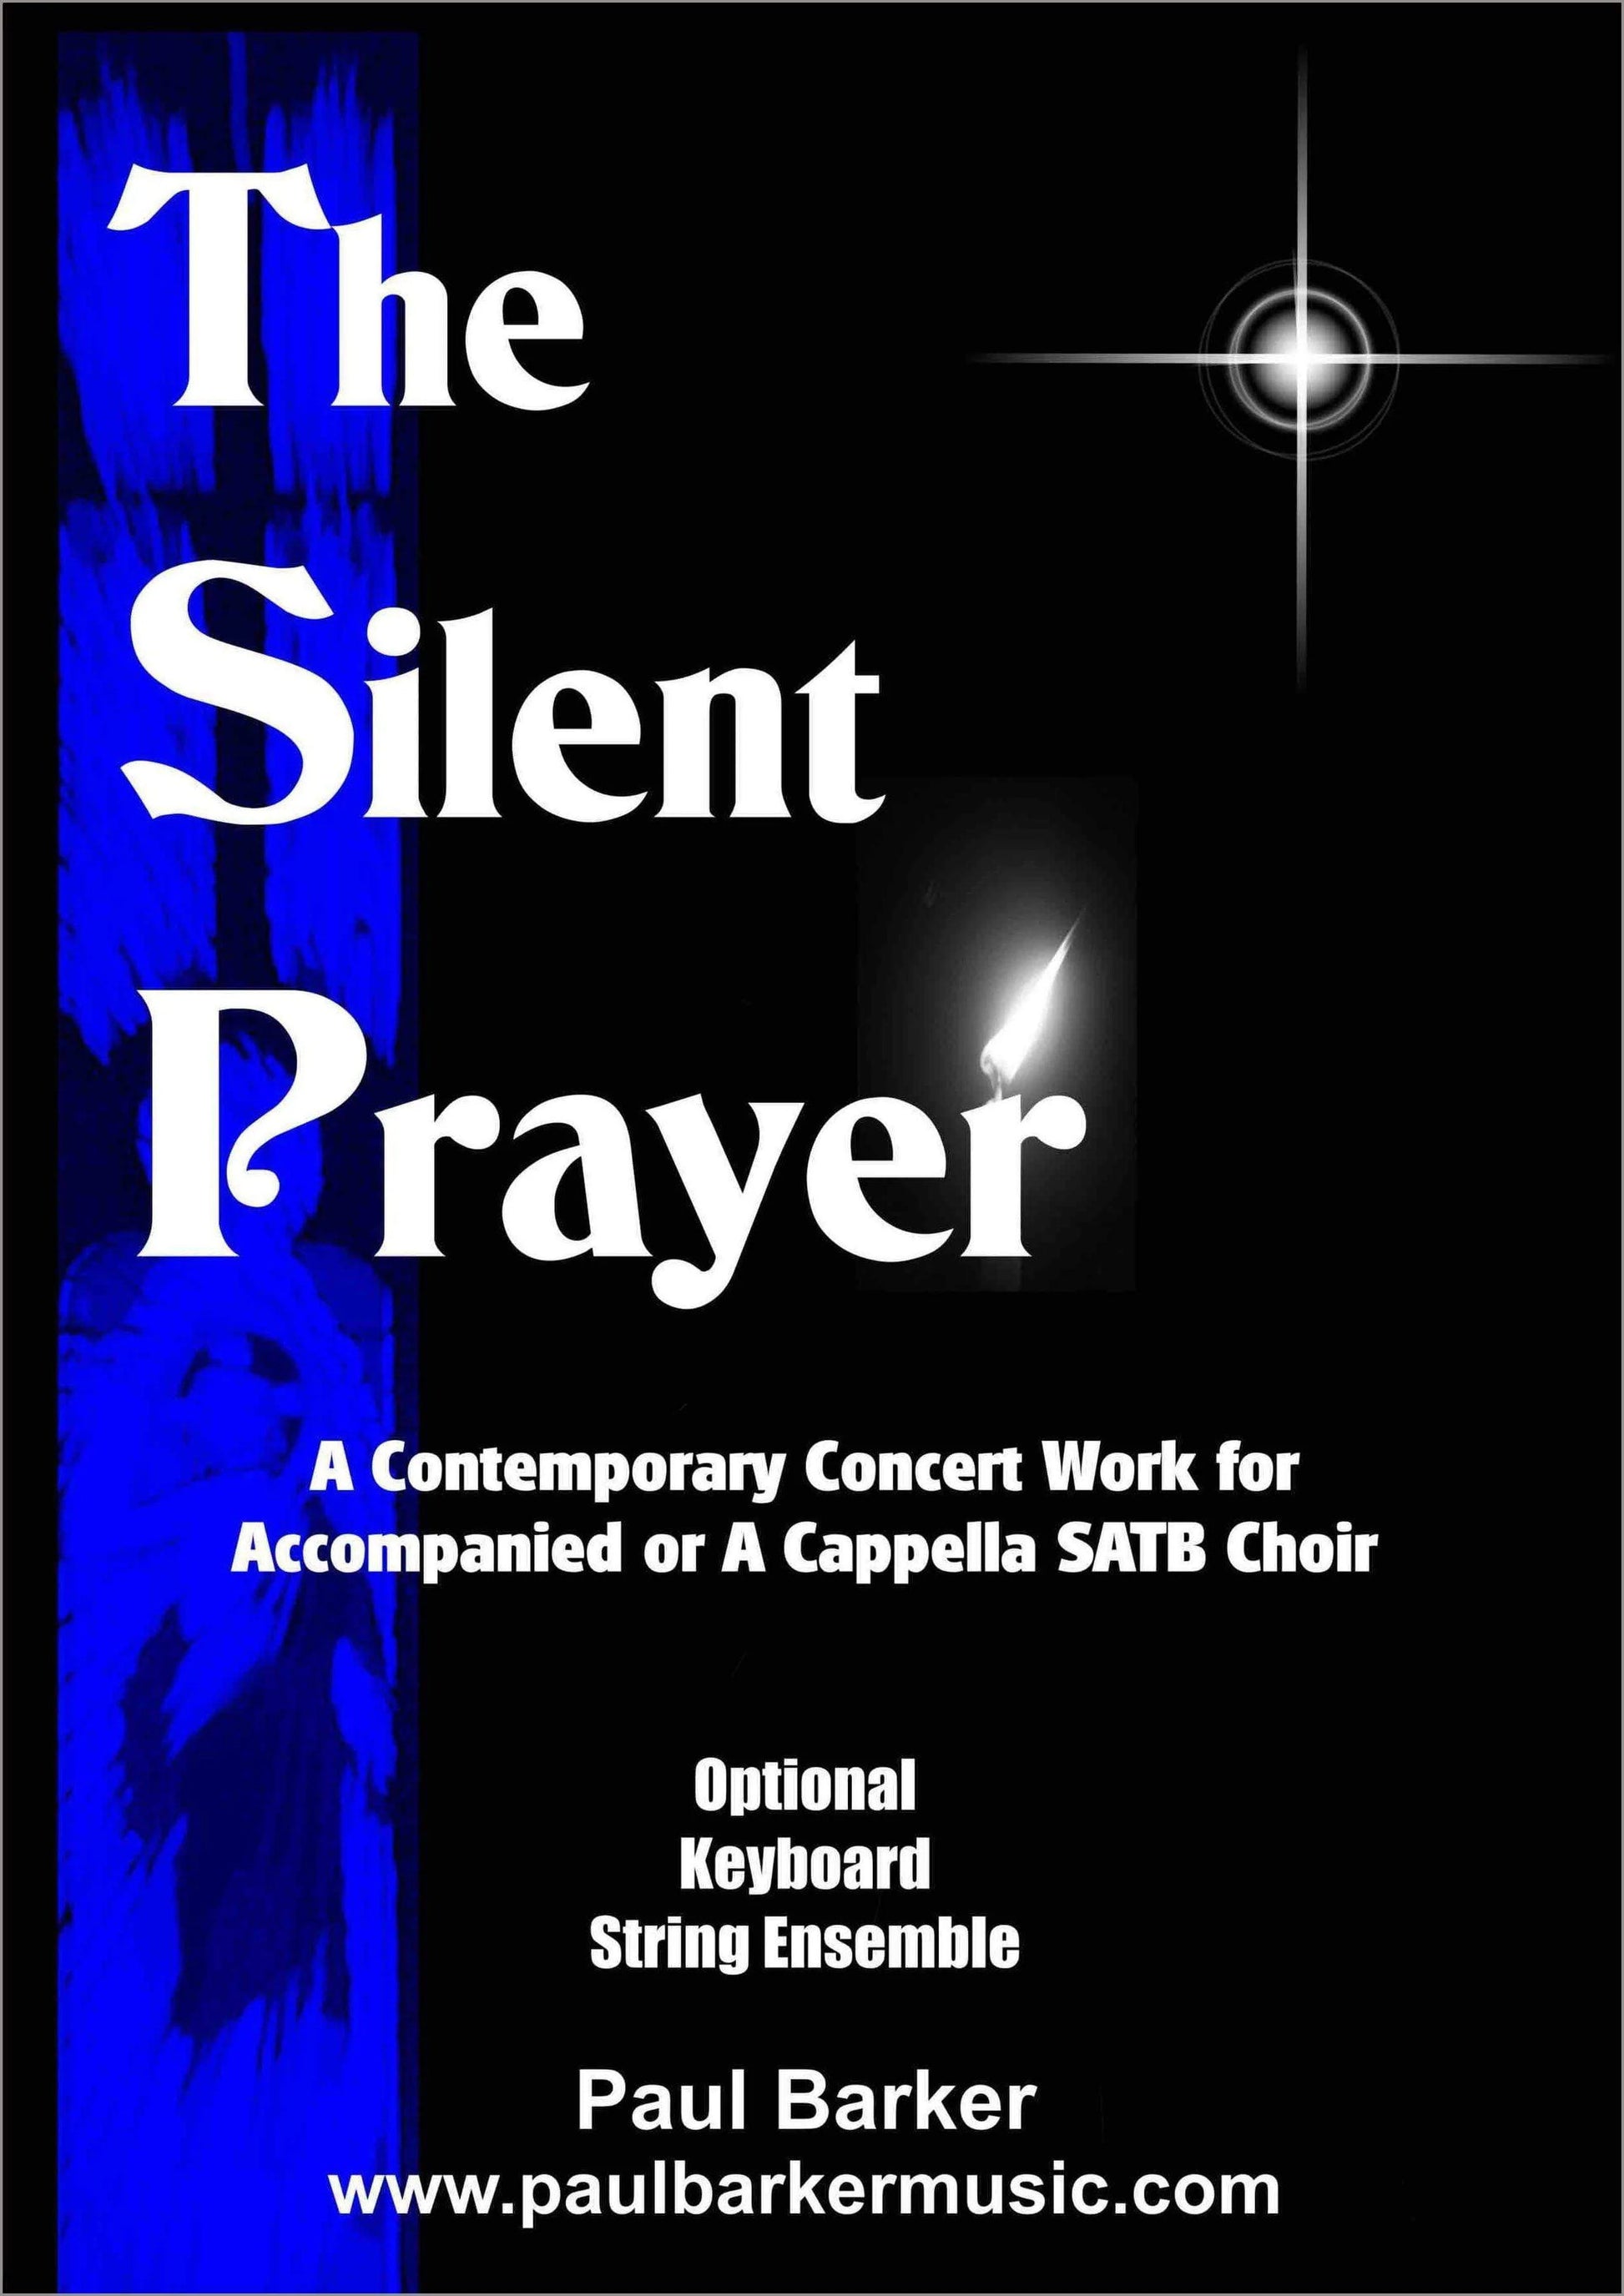 The Silent Prayer - Paul Barker Music 